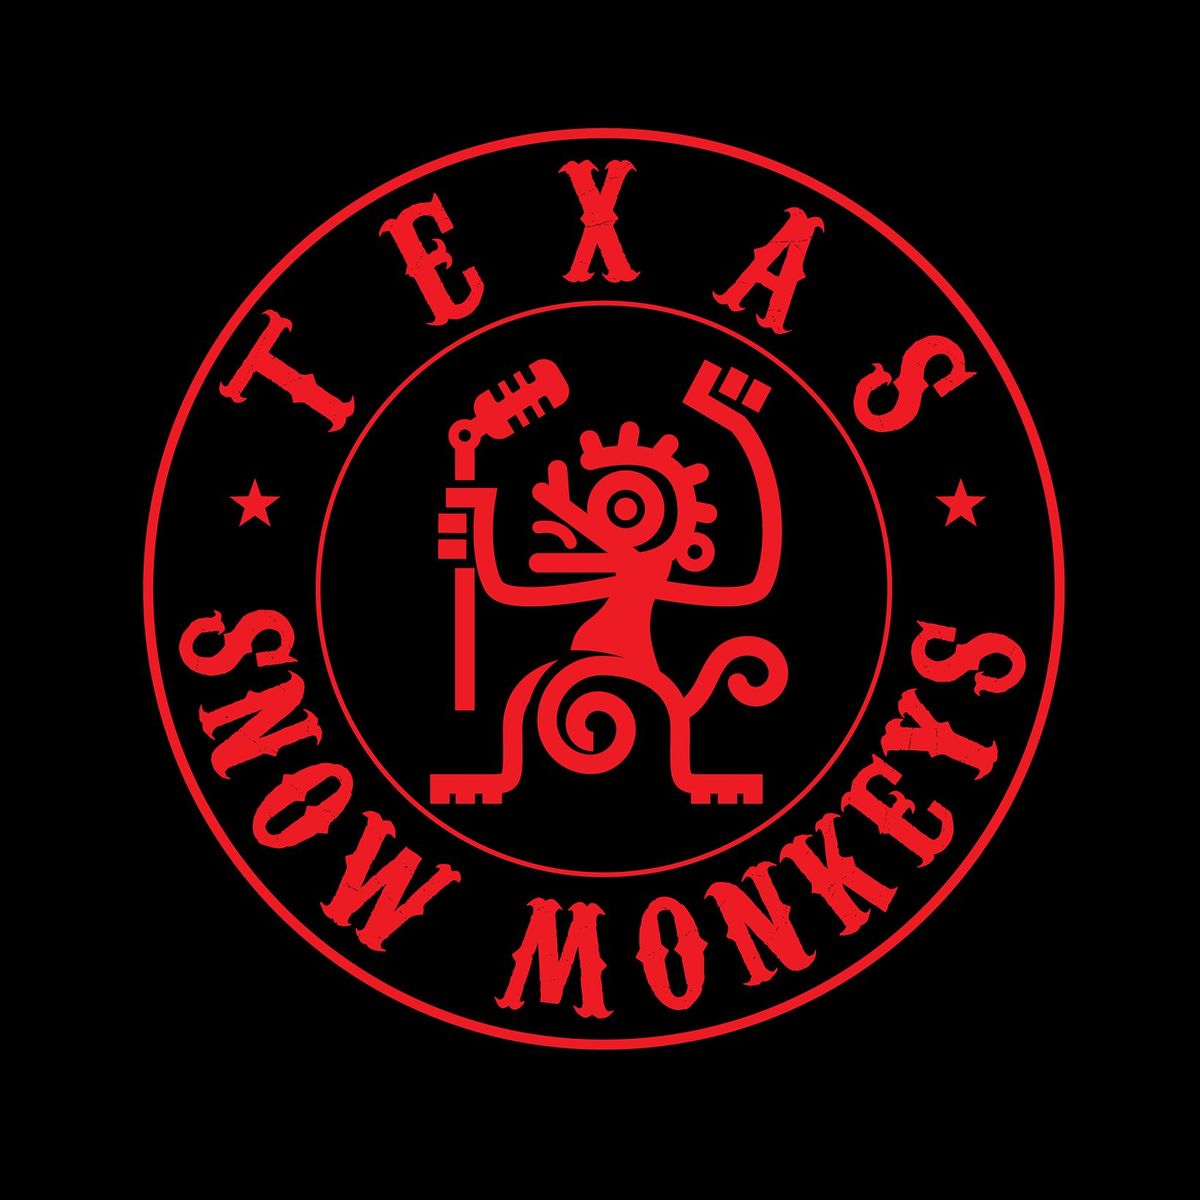 Texas Snow Monkeys @ VFW Post 10429